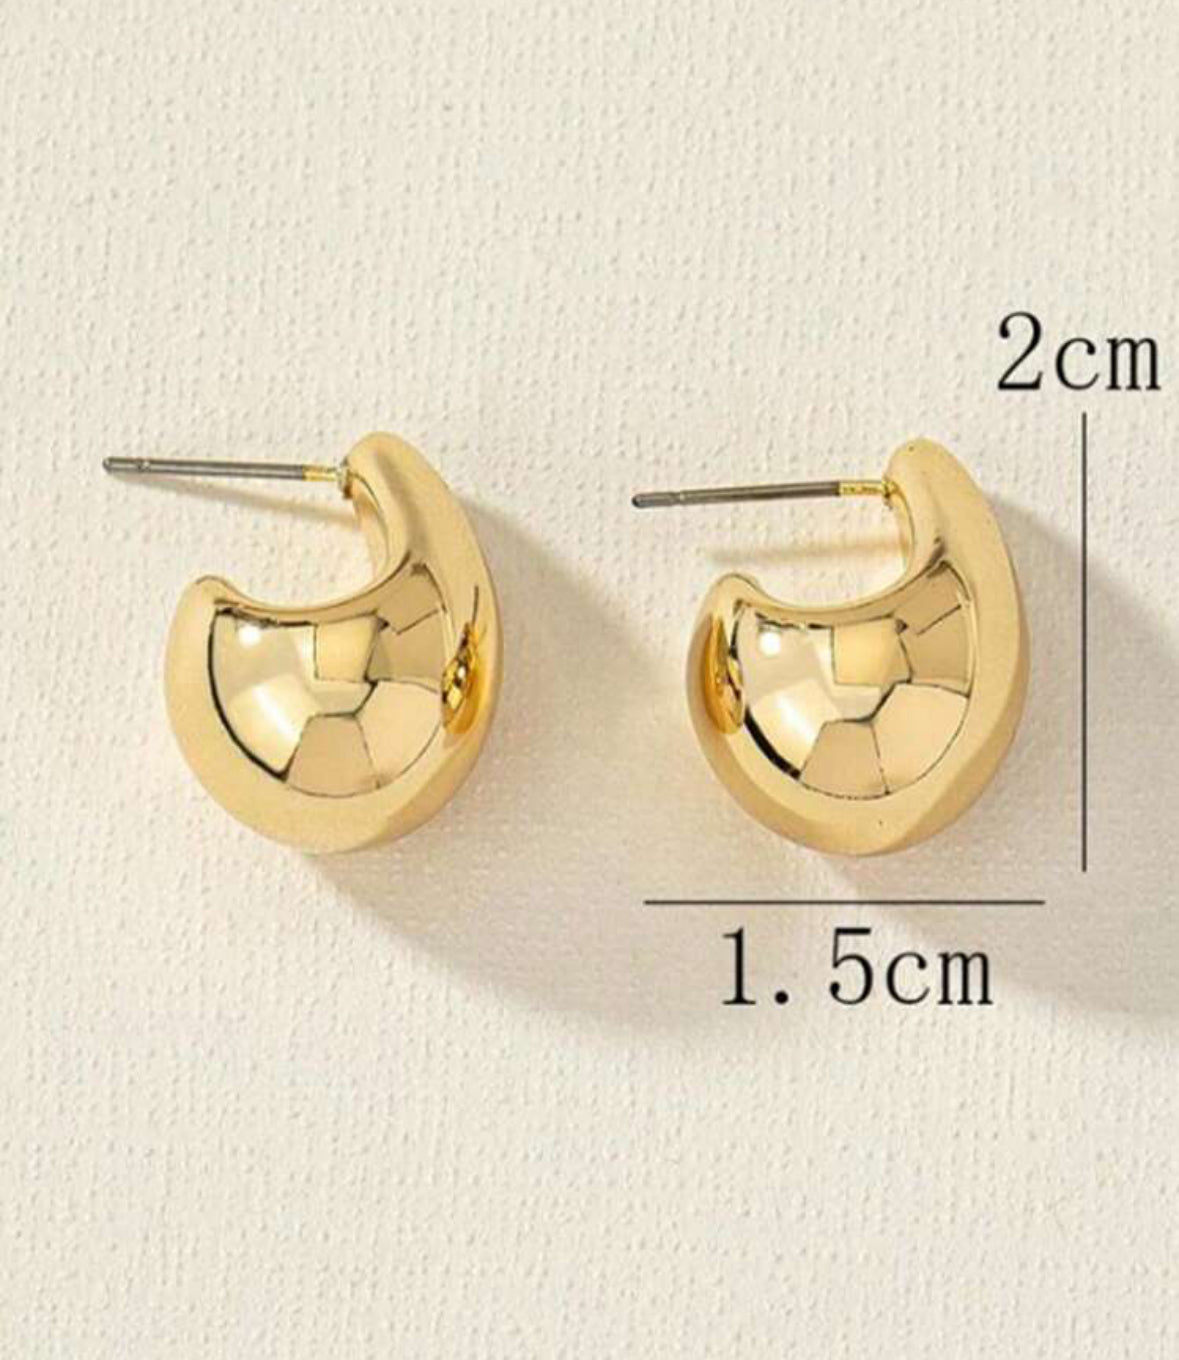 Gold Teardrop Earrings for Women - S925 Sterling Silver Earrings